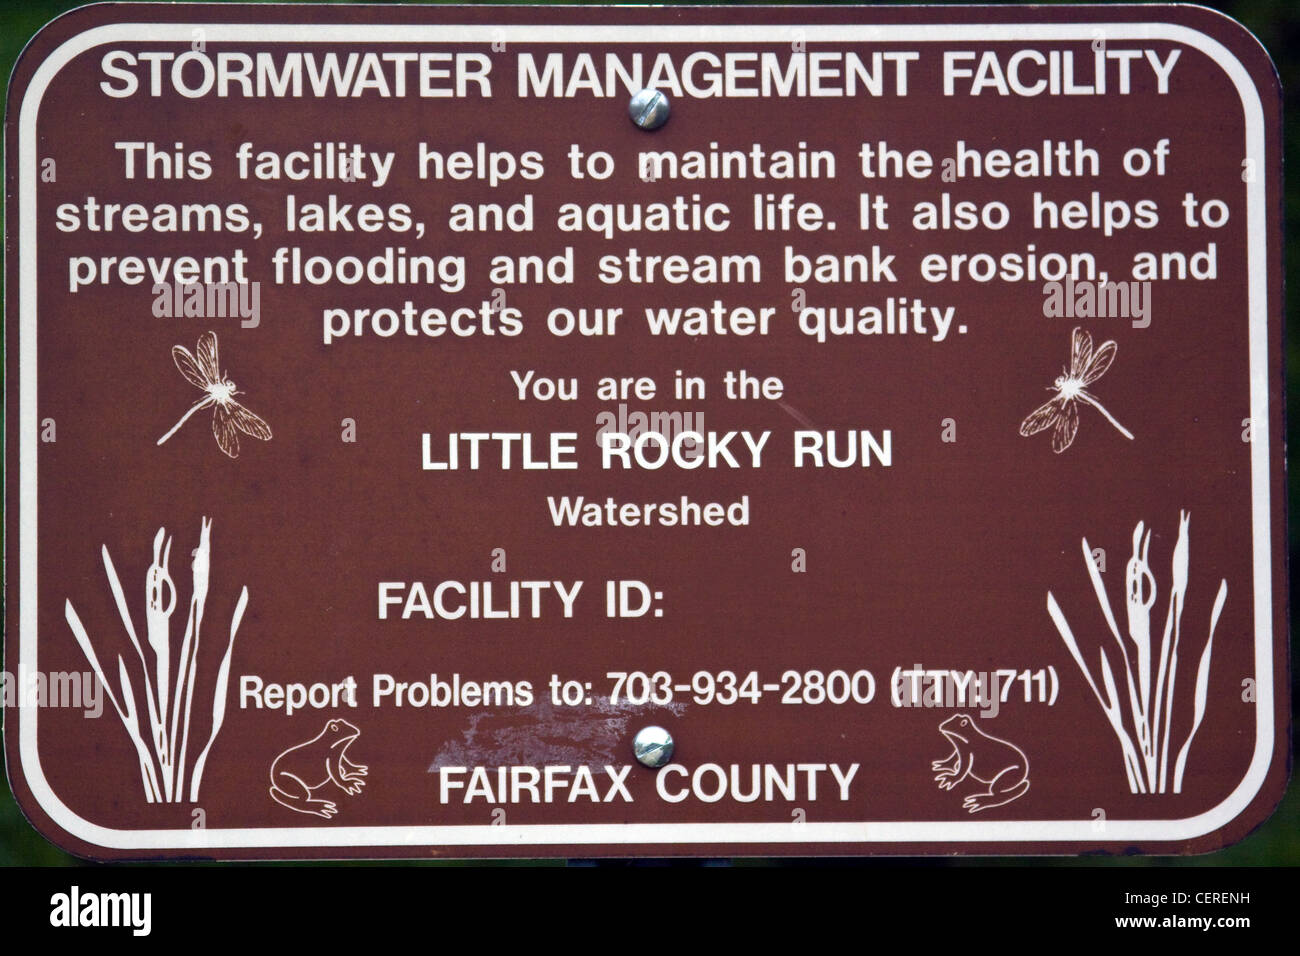 Fairfax County Virginia Regenwasser Management Facility Zeichen für kleine felsige laufen Watershed Stockfoto